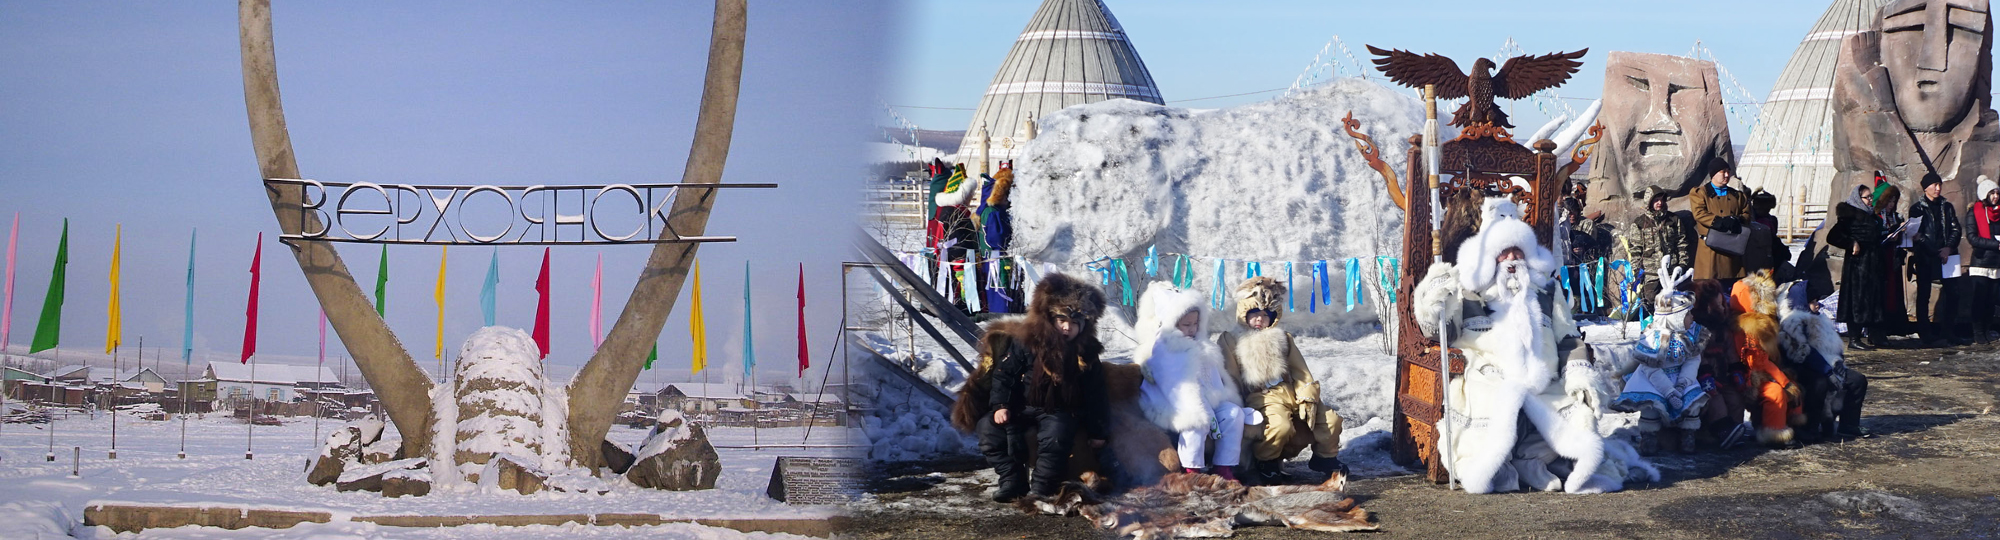 世界一寒い秘境の村ベルホヤンスクで寒極探検